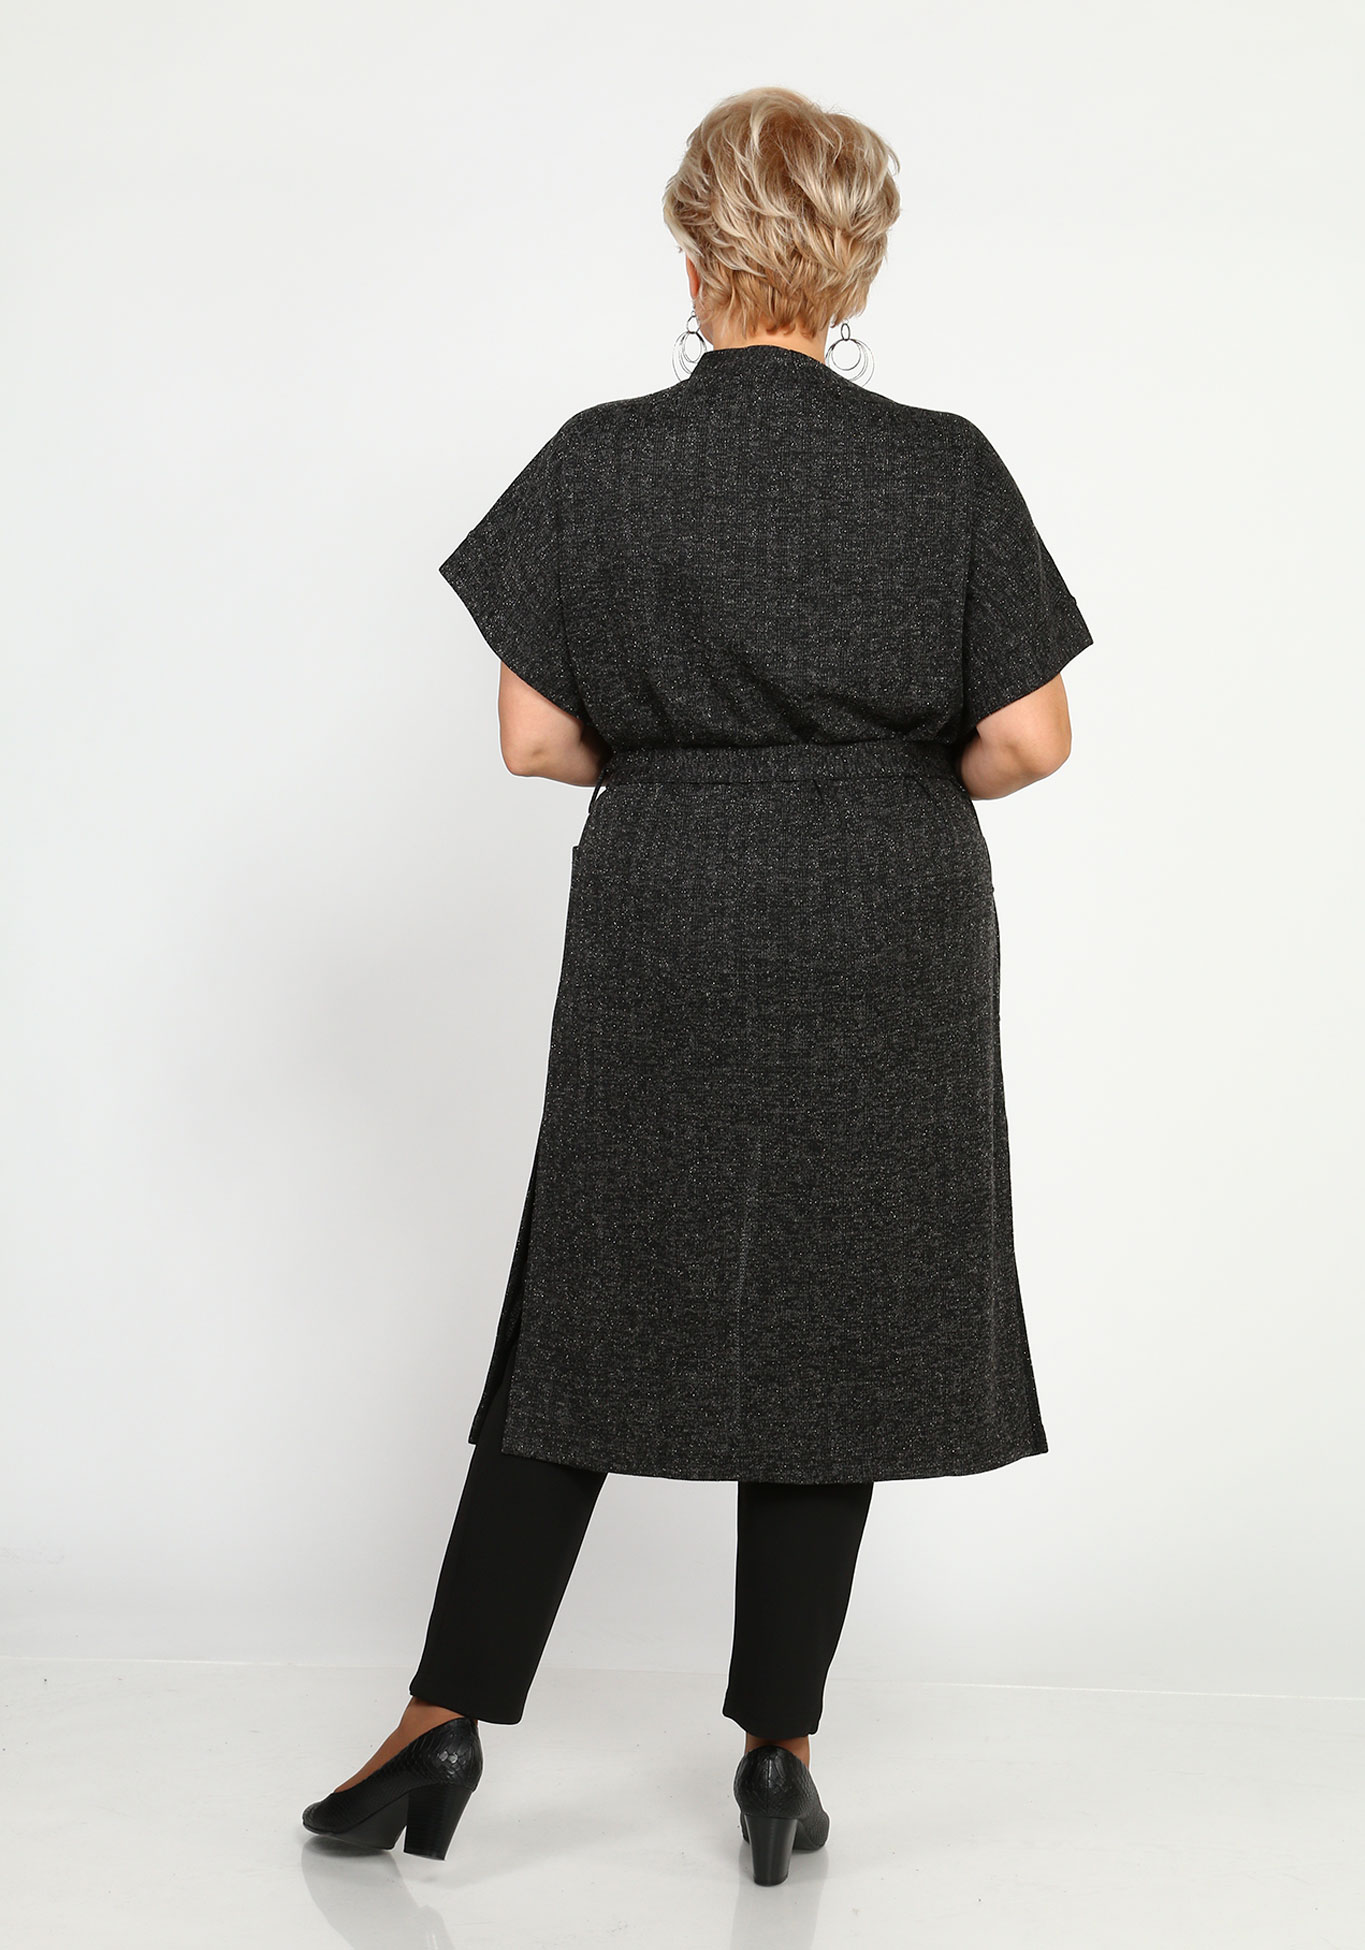 Кардиган с карманами и поясом удлинённый Синель, размер 46, цвет тёмно-серый - фото 4